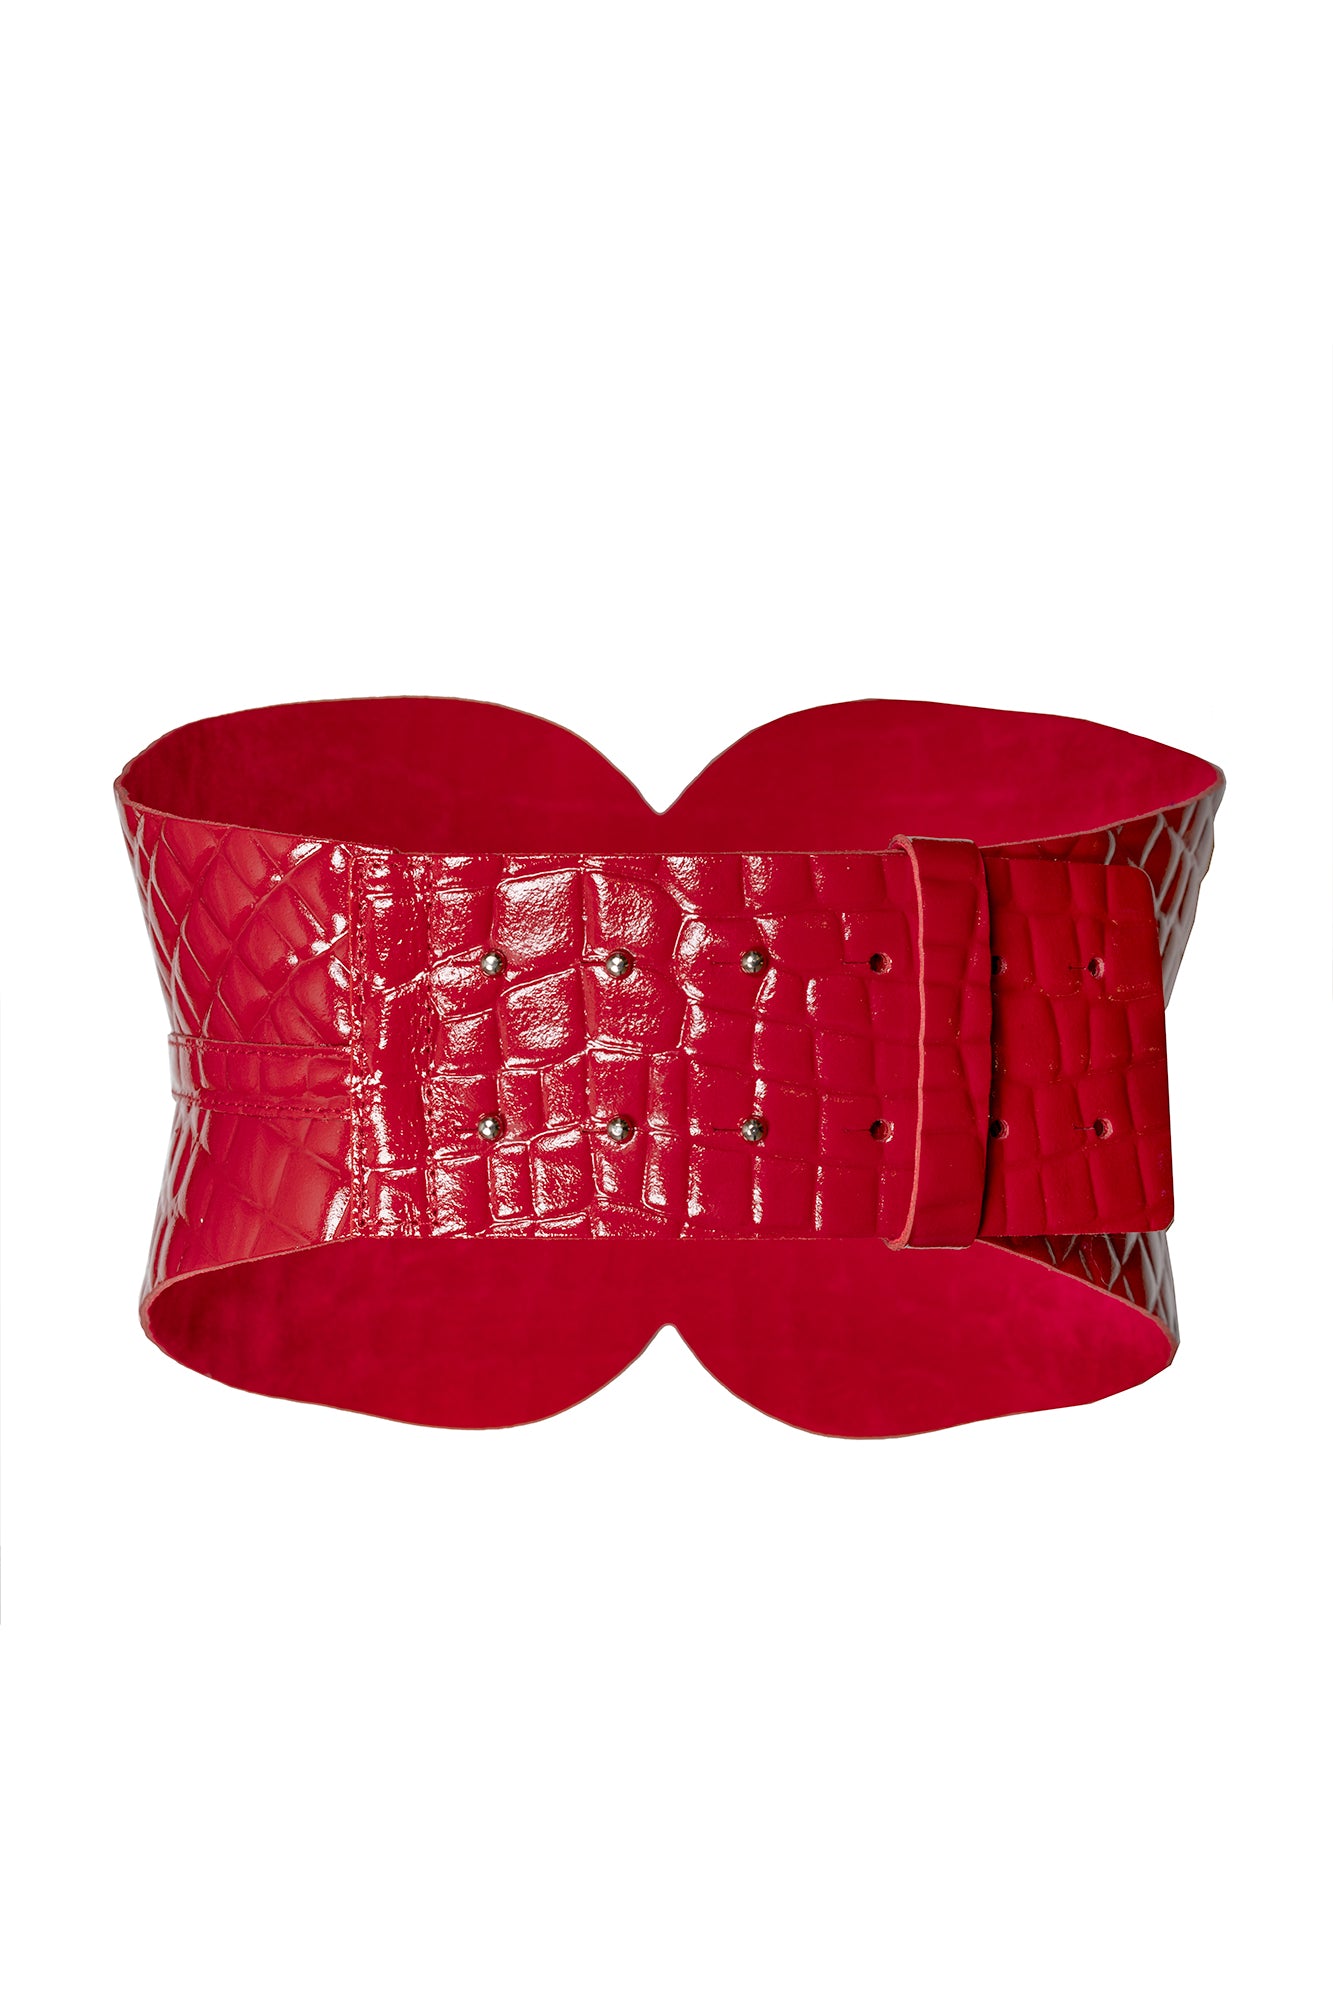 Cintura bustier in ecopelle rossa stampata